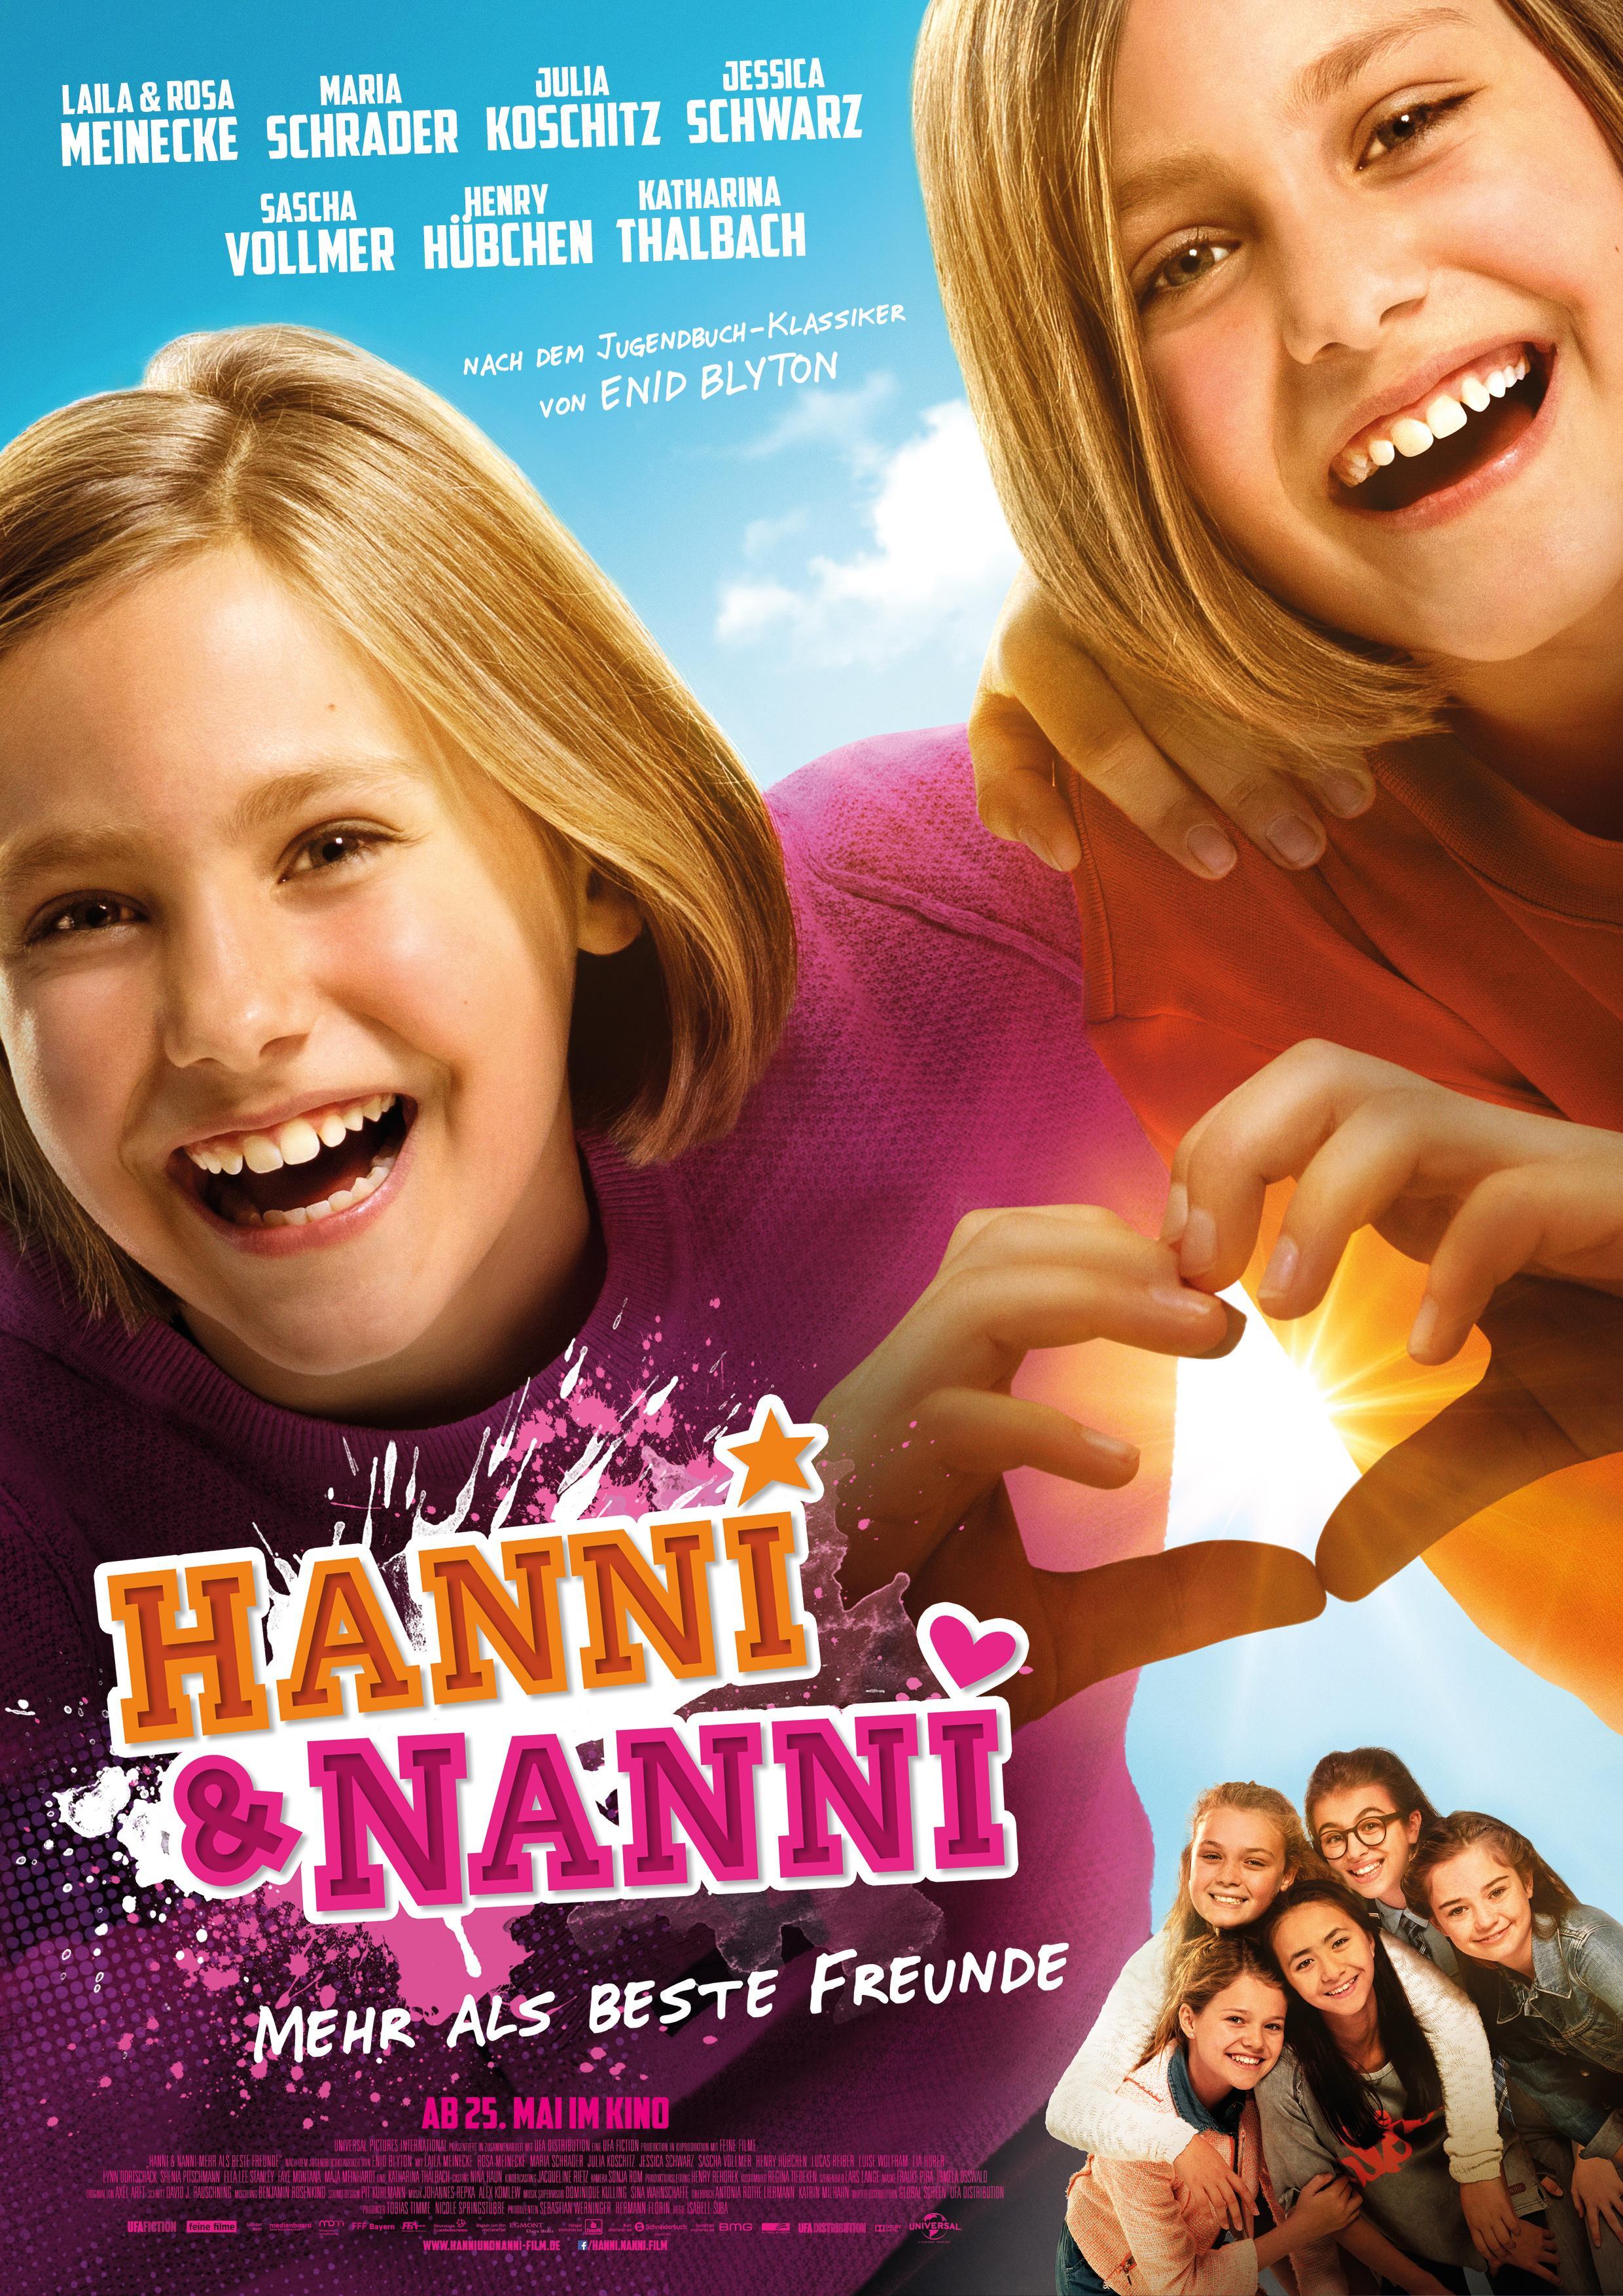 Постер фильма Hanni & Nanni: Mehr als beste Freunde